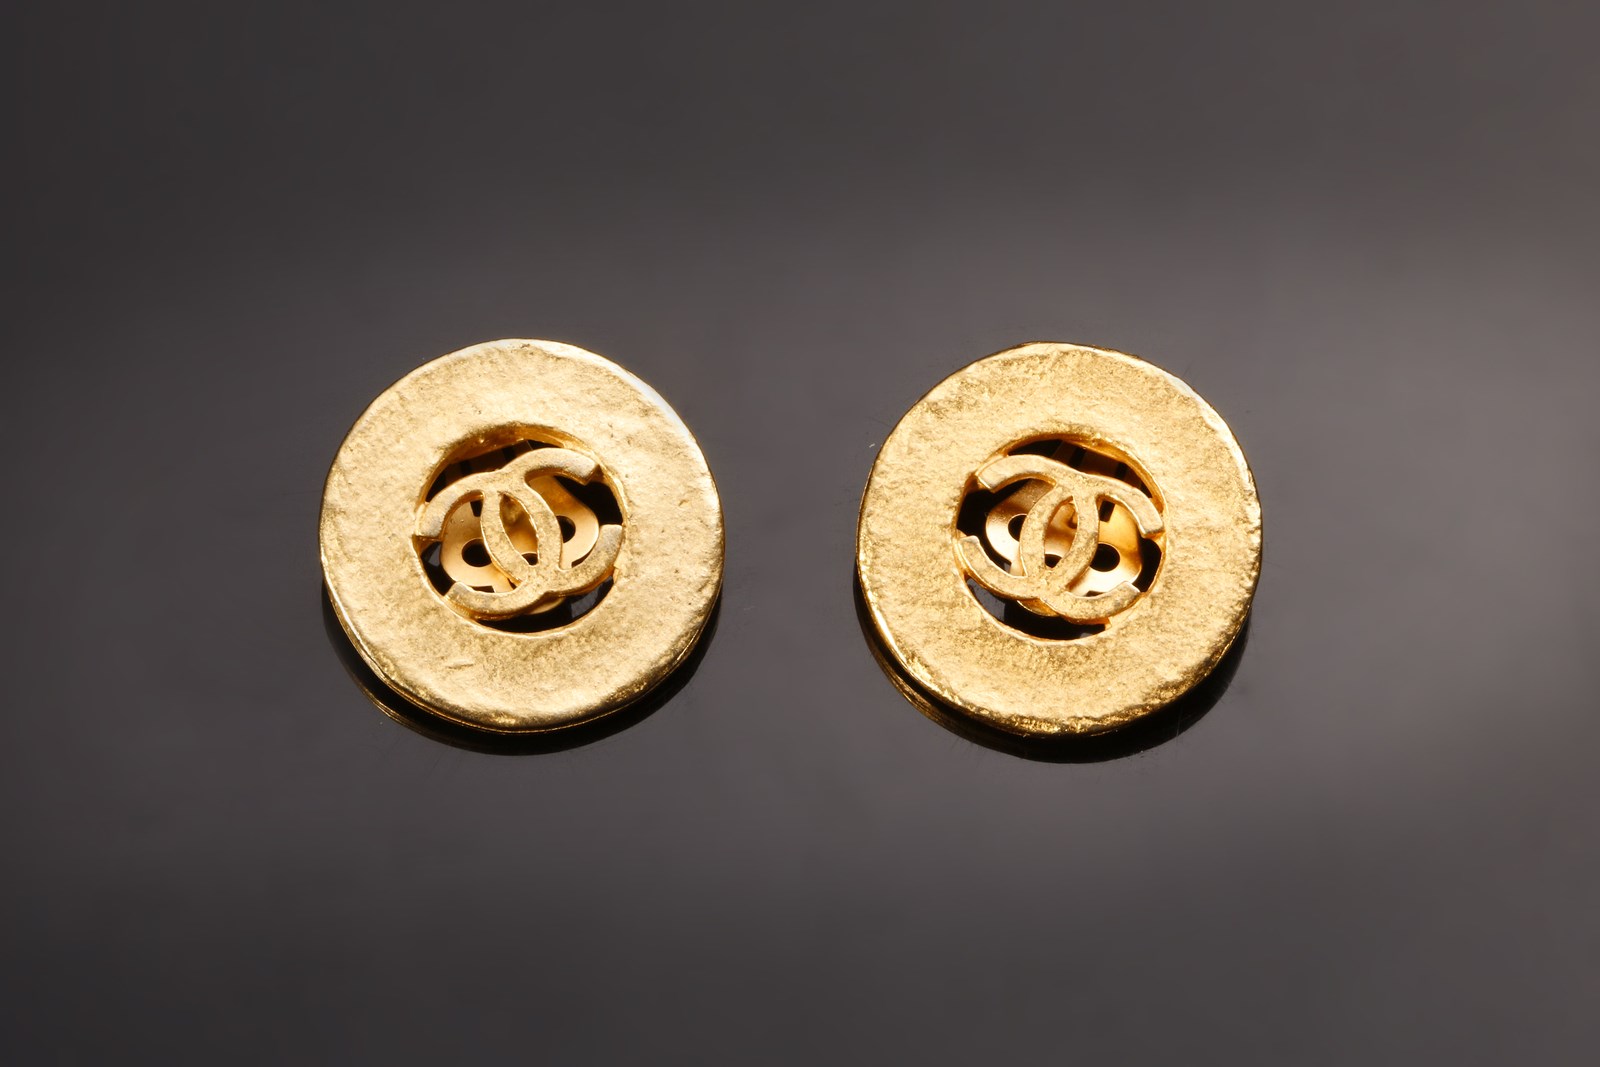 chanel jewelry earrings gold